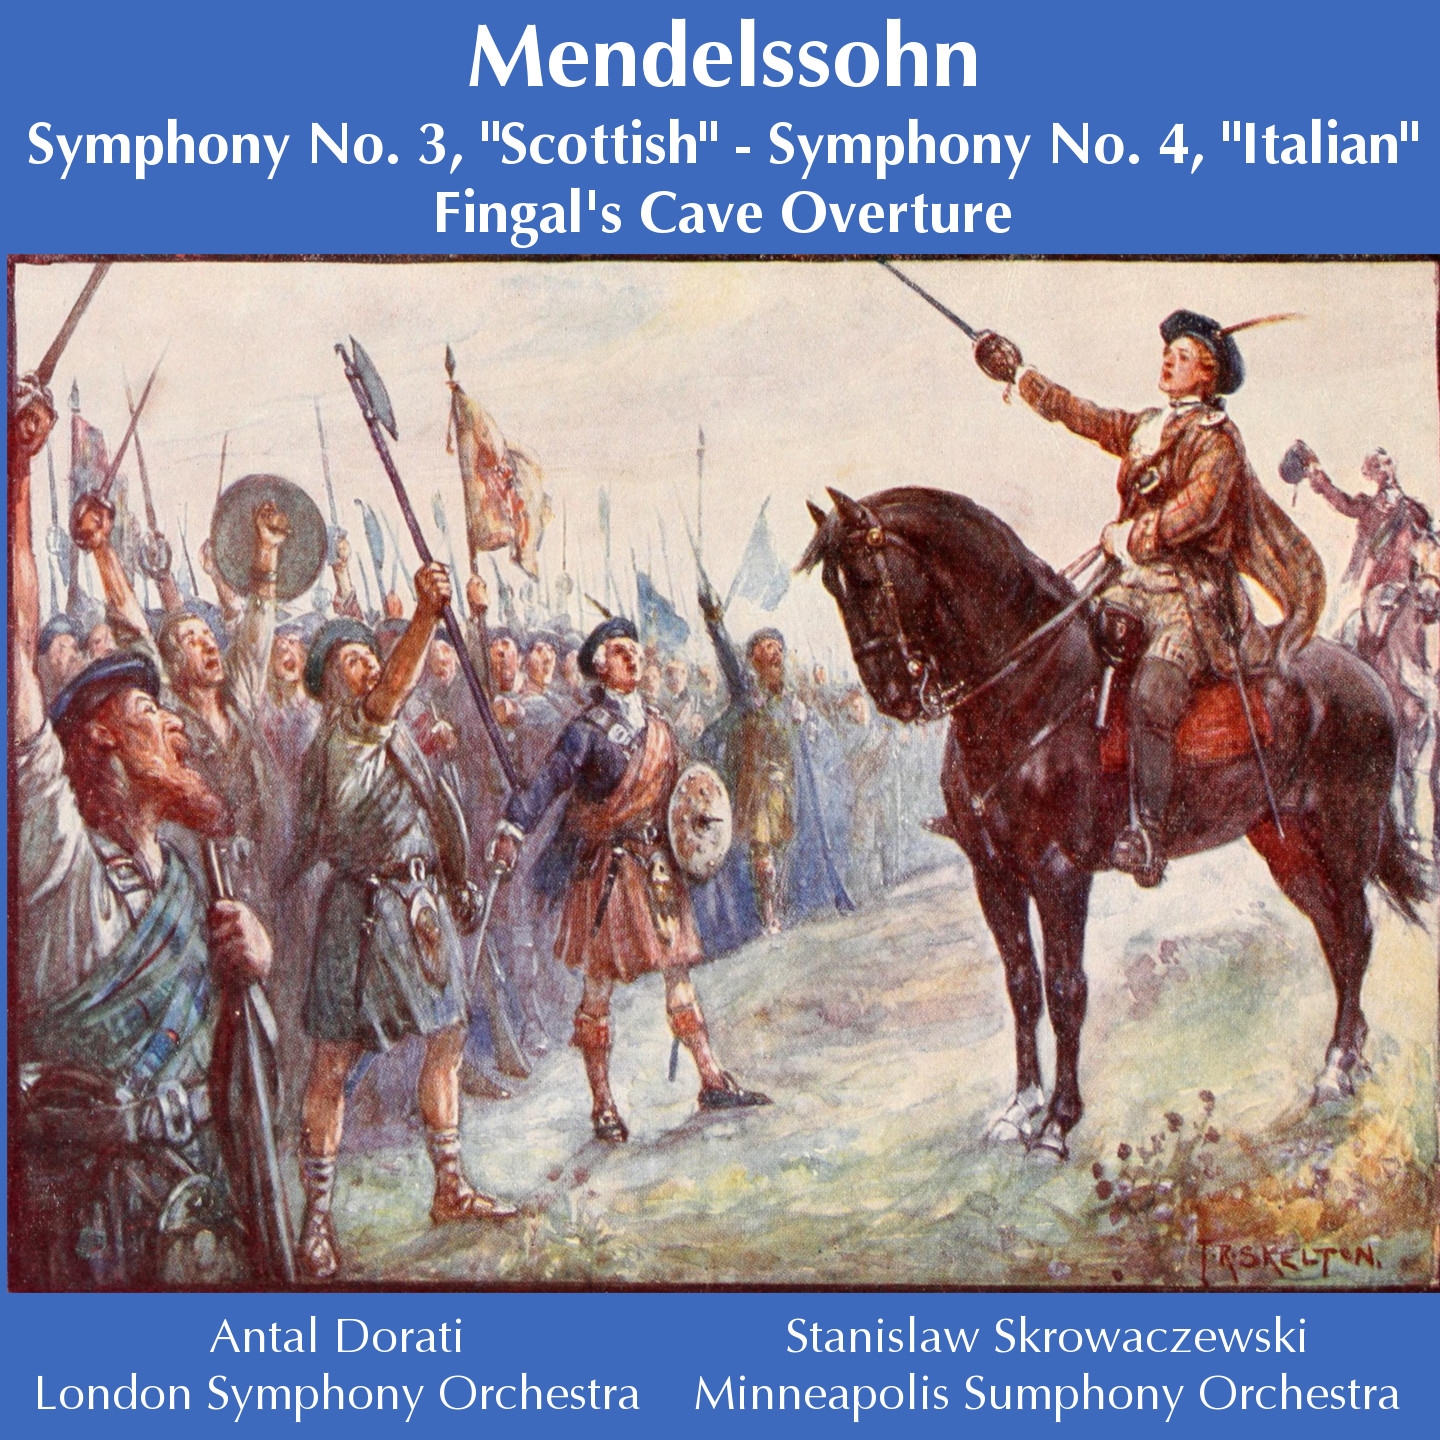 Symphony No. 3 in A Minor, Op. 56 "Scottish": I. Andante con moto - Allegro un poco agitato